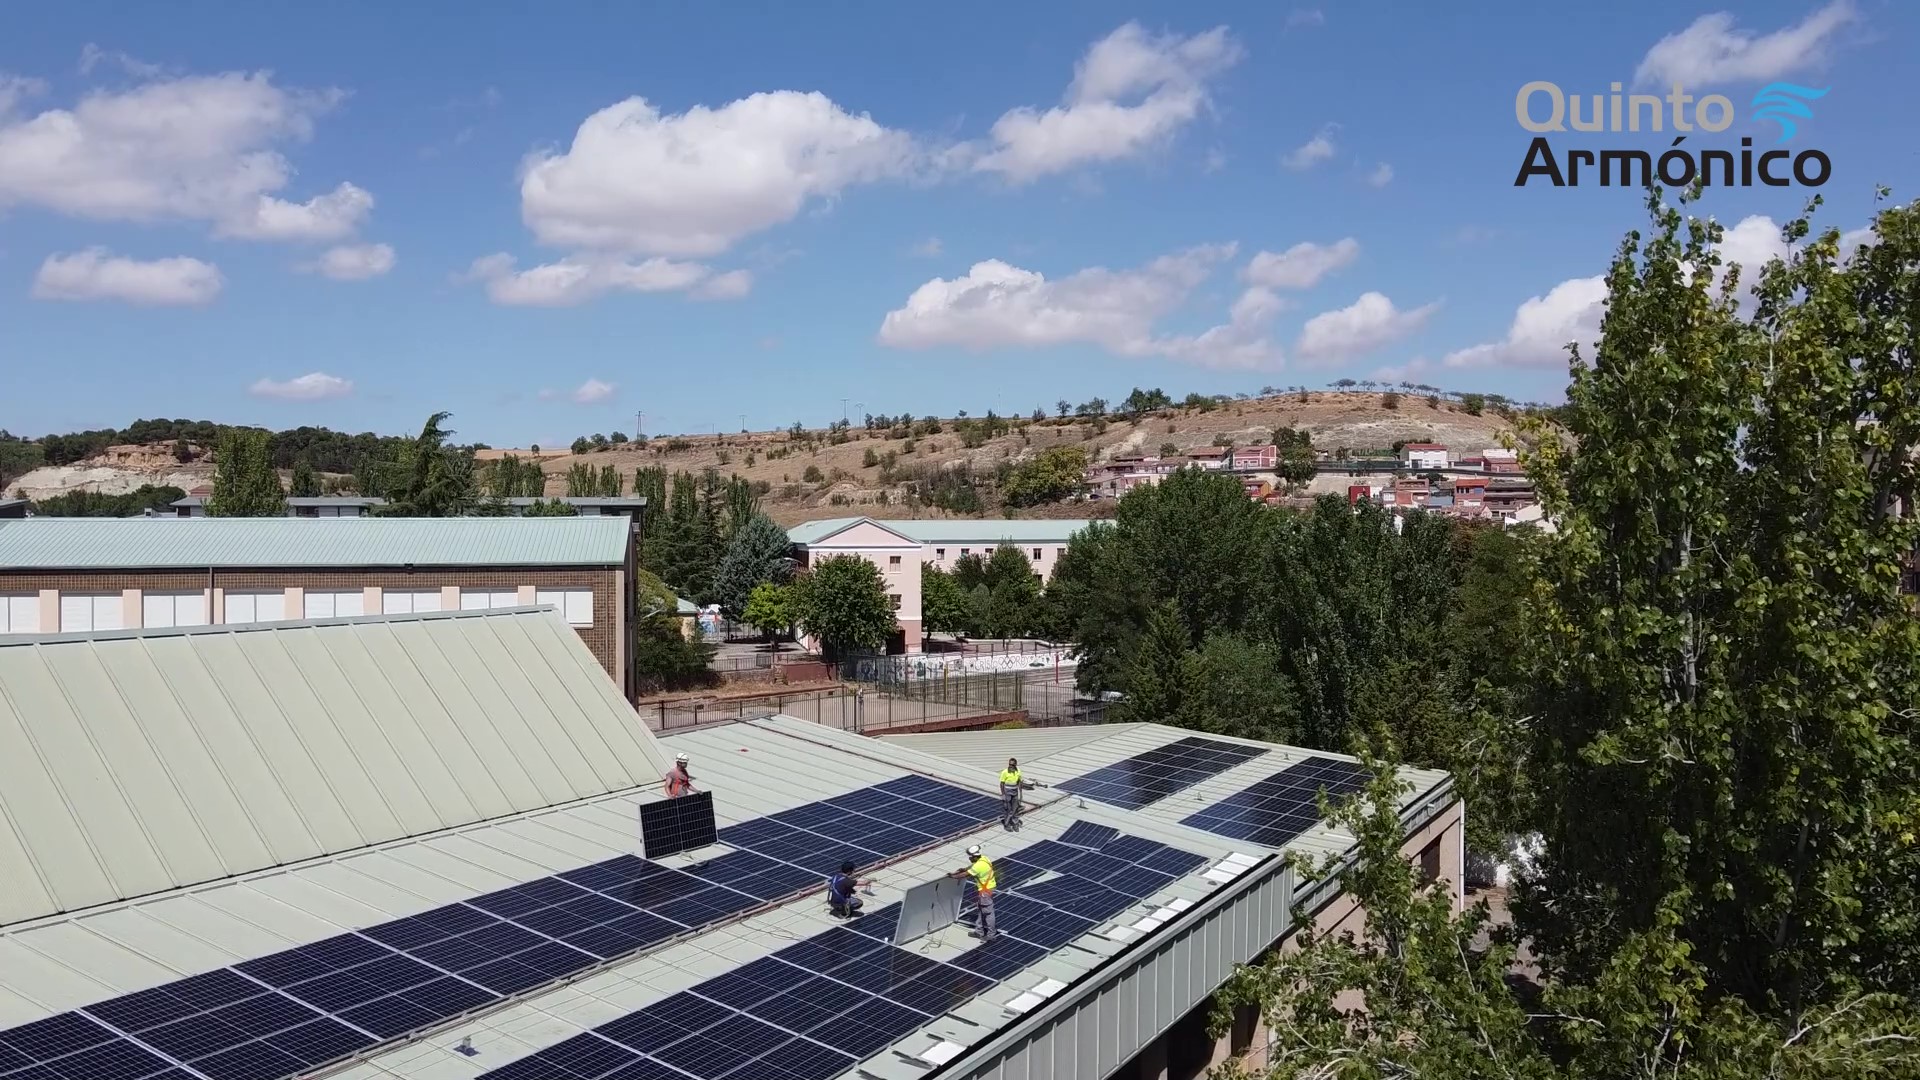 Instalación solar fotovoltaica de autoconsumo para el Instituto Politécnico Cristo Rey de Valladolid